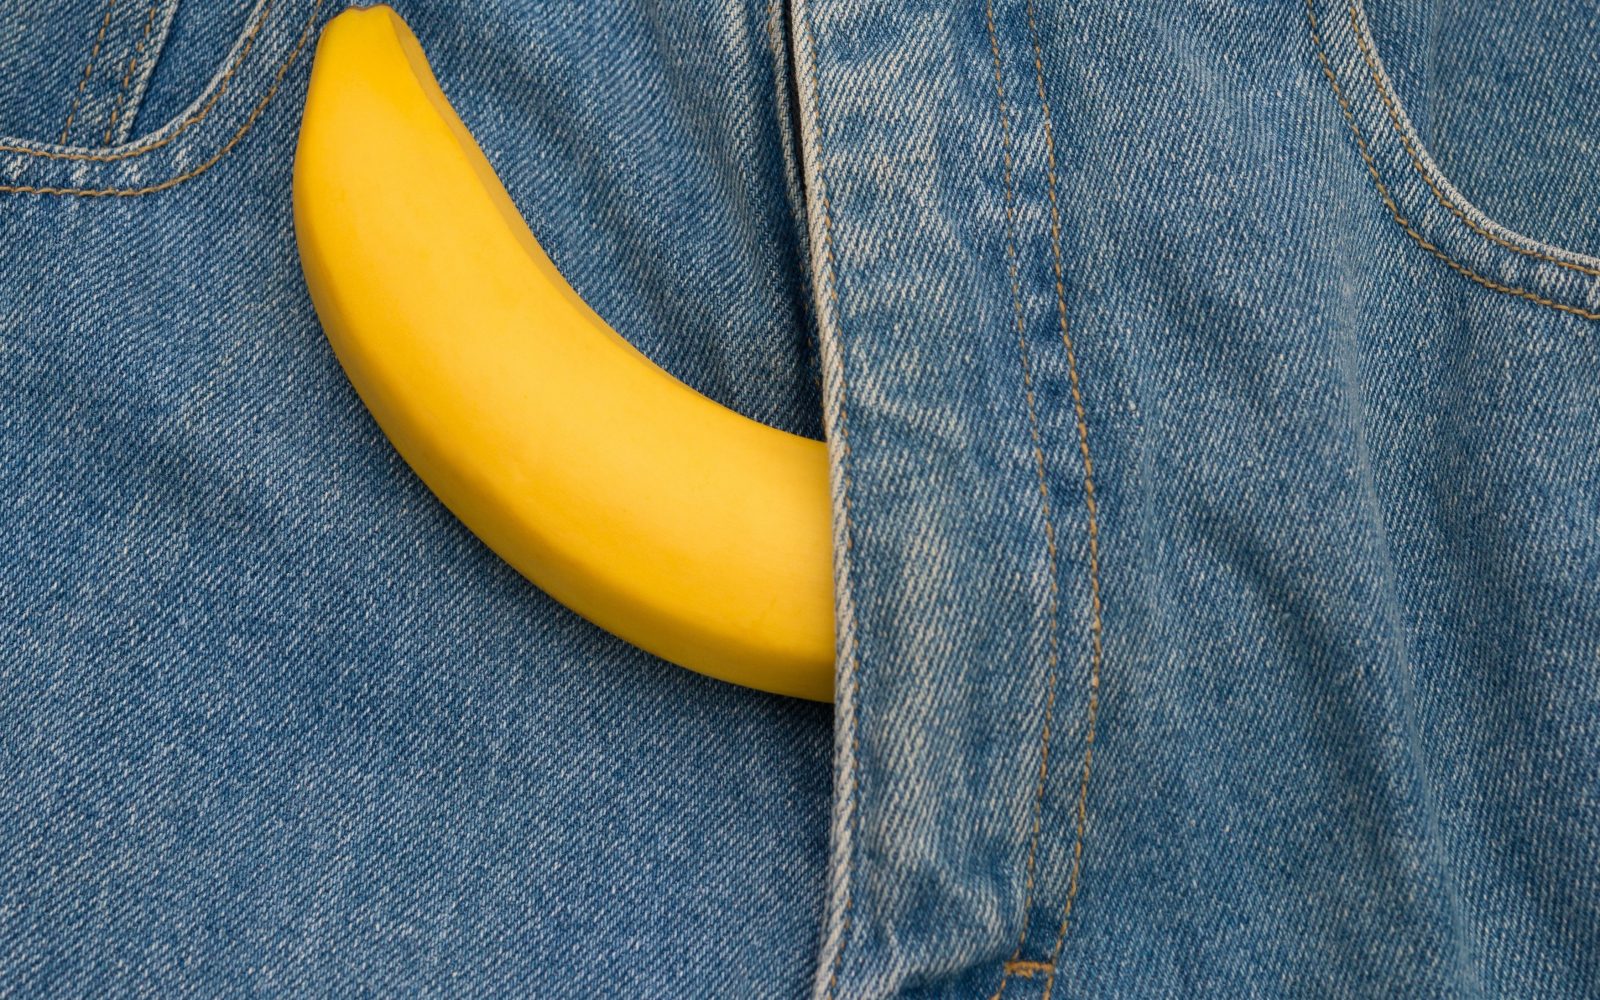 Banana in hlače, ki simbolizira moško zdravje